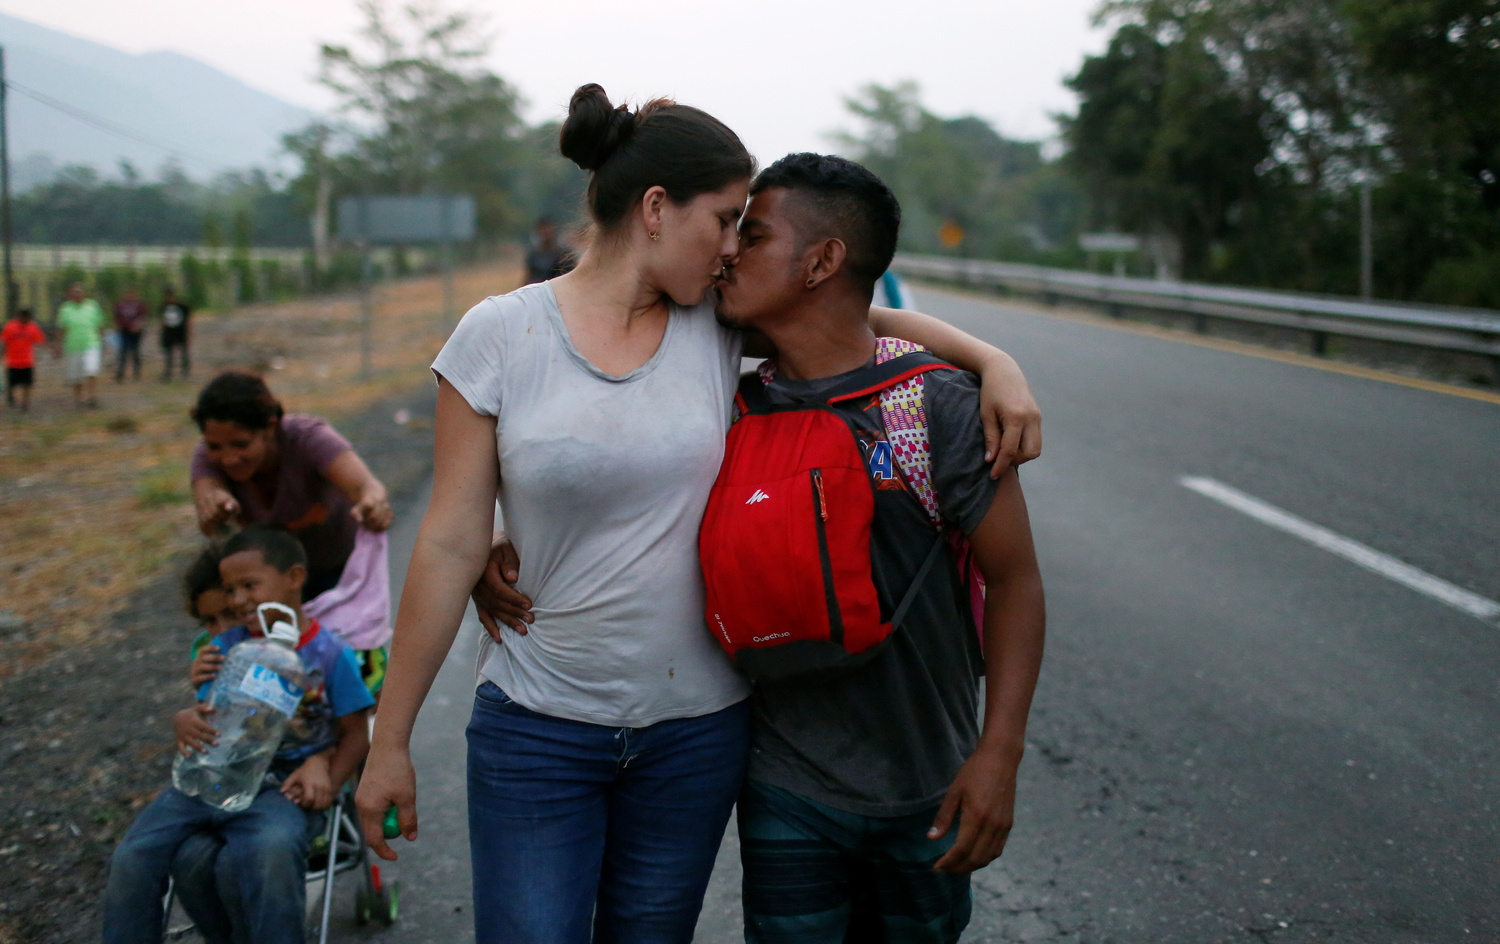 Una coppia di migranti provenienti dall'Honduras si bacia mentre avanza lungo la strada con altri migranti provenienti dall'America centrale durante il loro viaggio verso gli Stati Uniti, Huixtla, Messico, 18 aprile 2019. REUTERS/Jose Cabezas